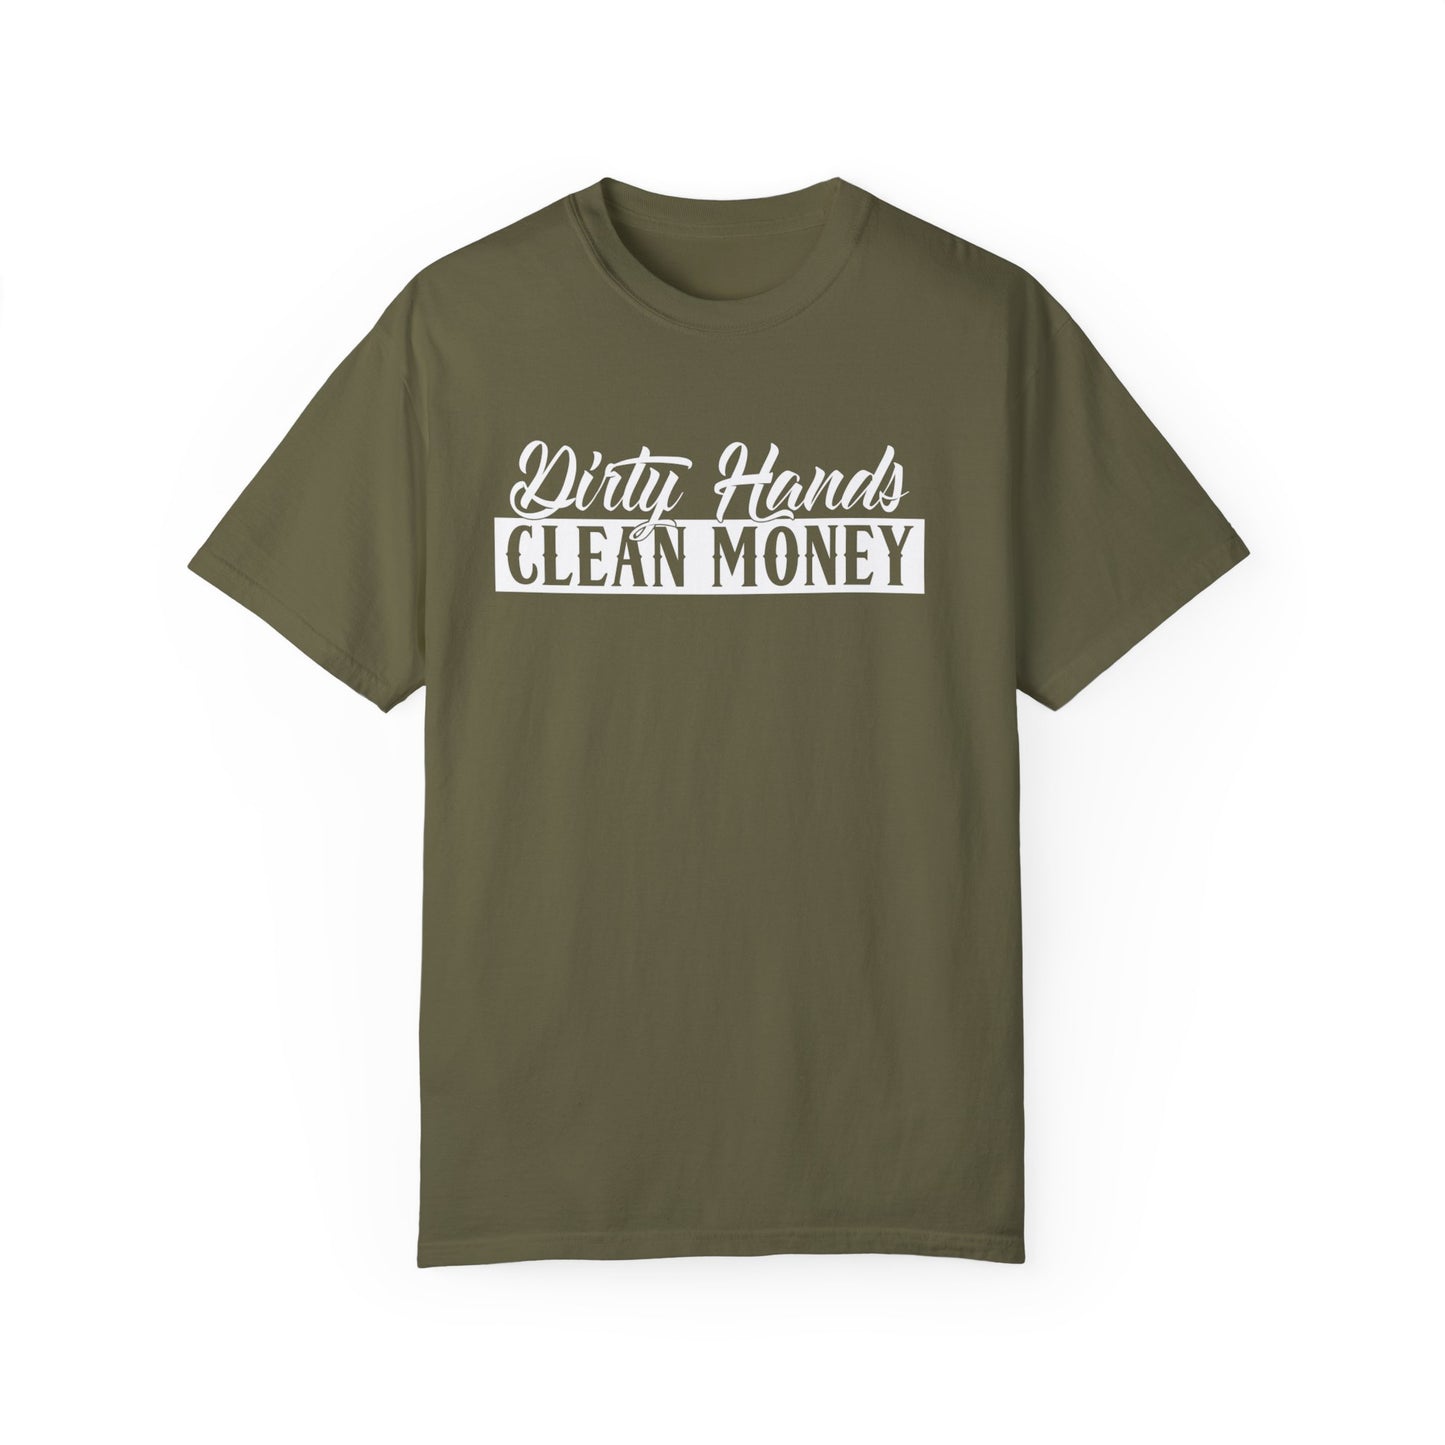 Dirty hands Clean Money T-shirt